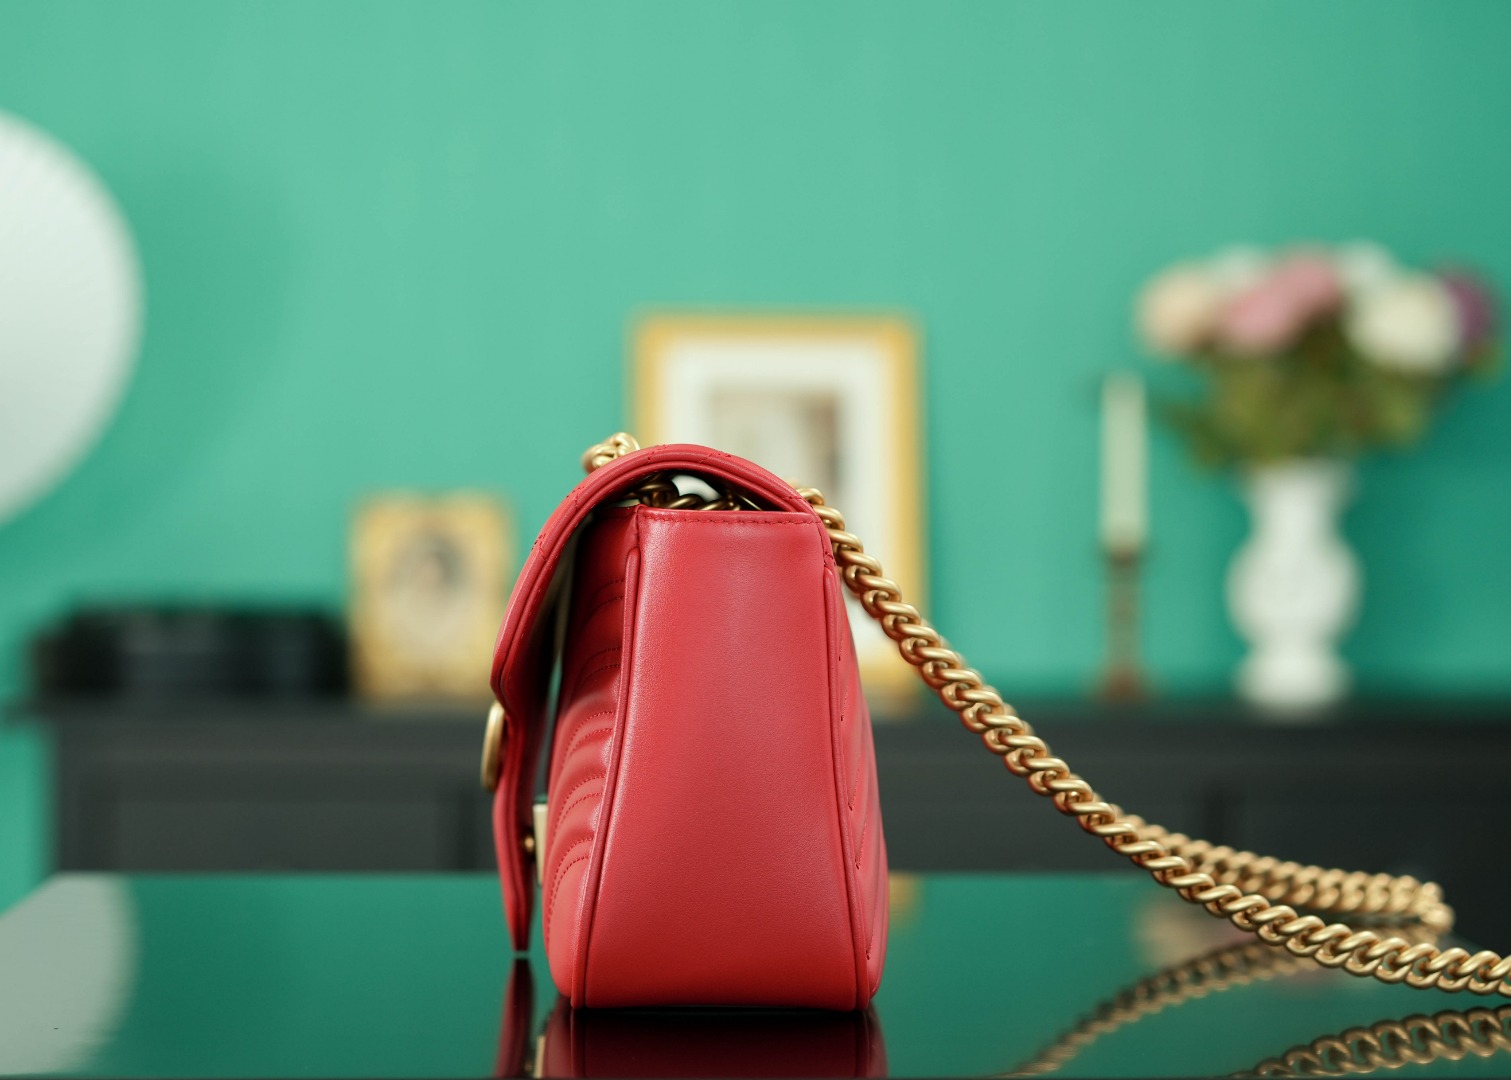 正品级Marmont系列肩背包经典款红色26cm原厂皮全铜五金正品售价129,500独家原厂皮发售限量级